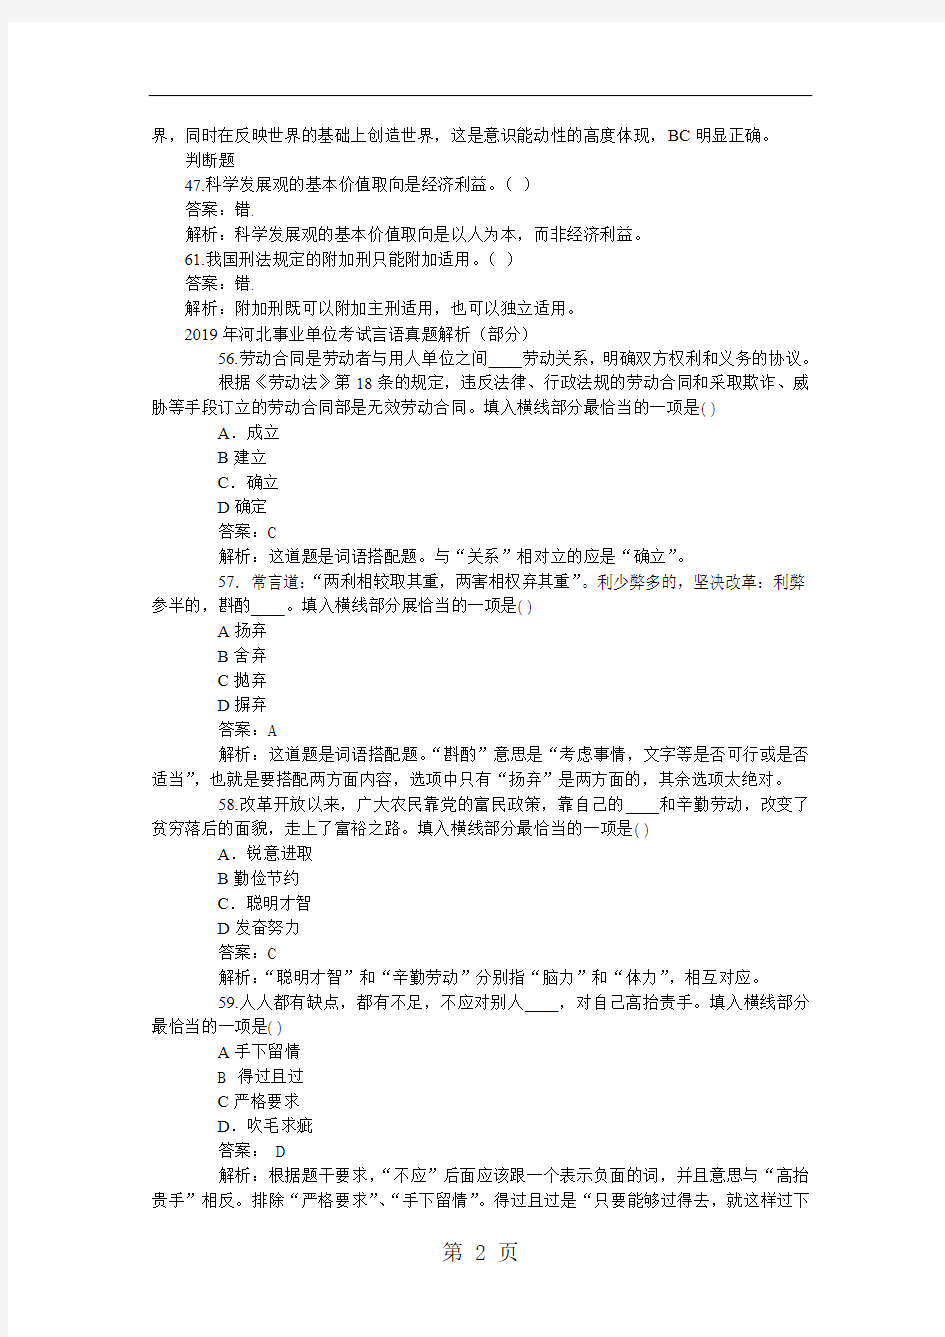 2019年河北省事业单位考试公共基础知识真题及解析5页